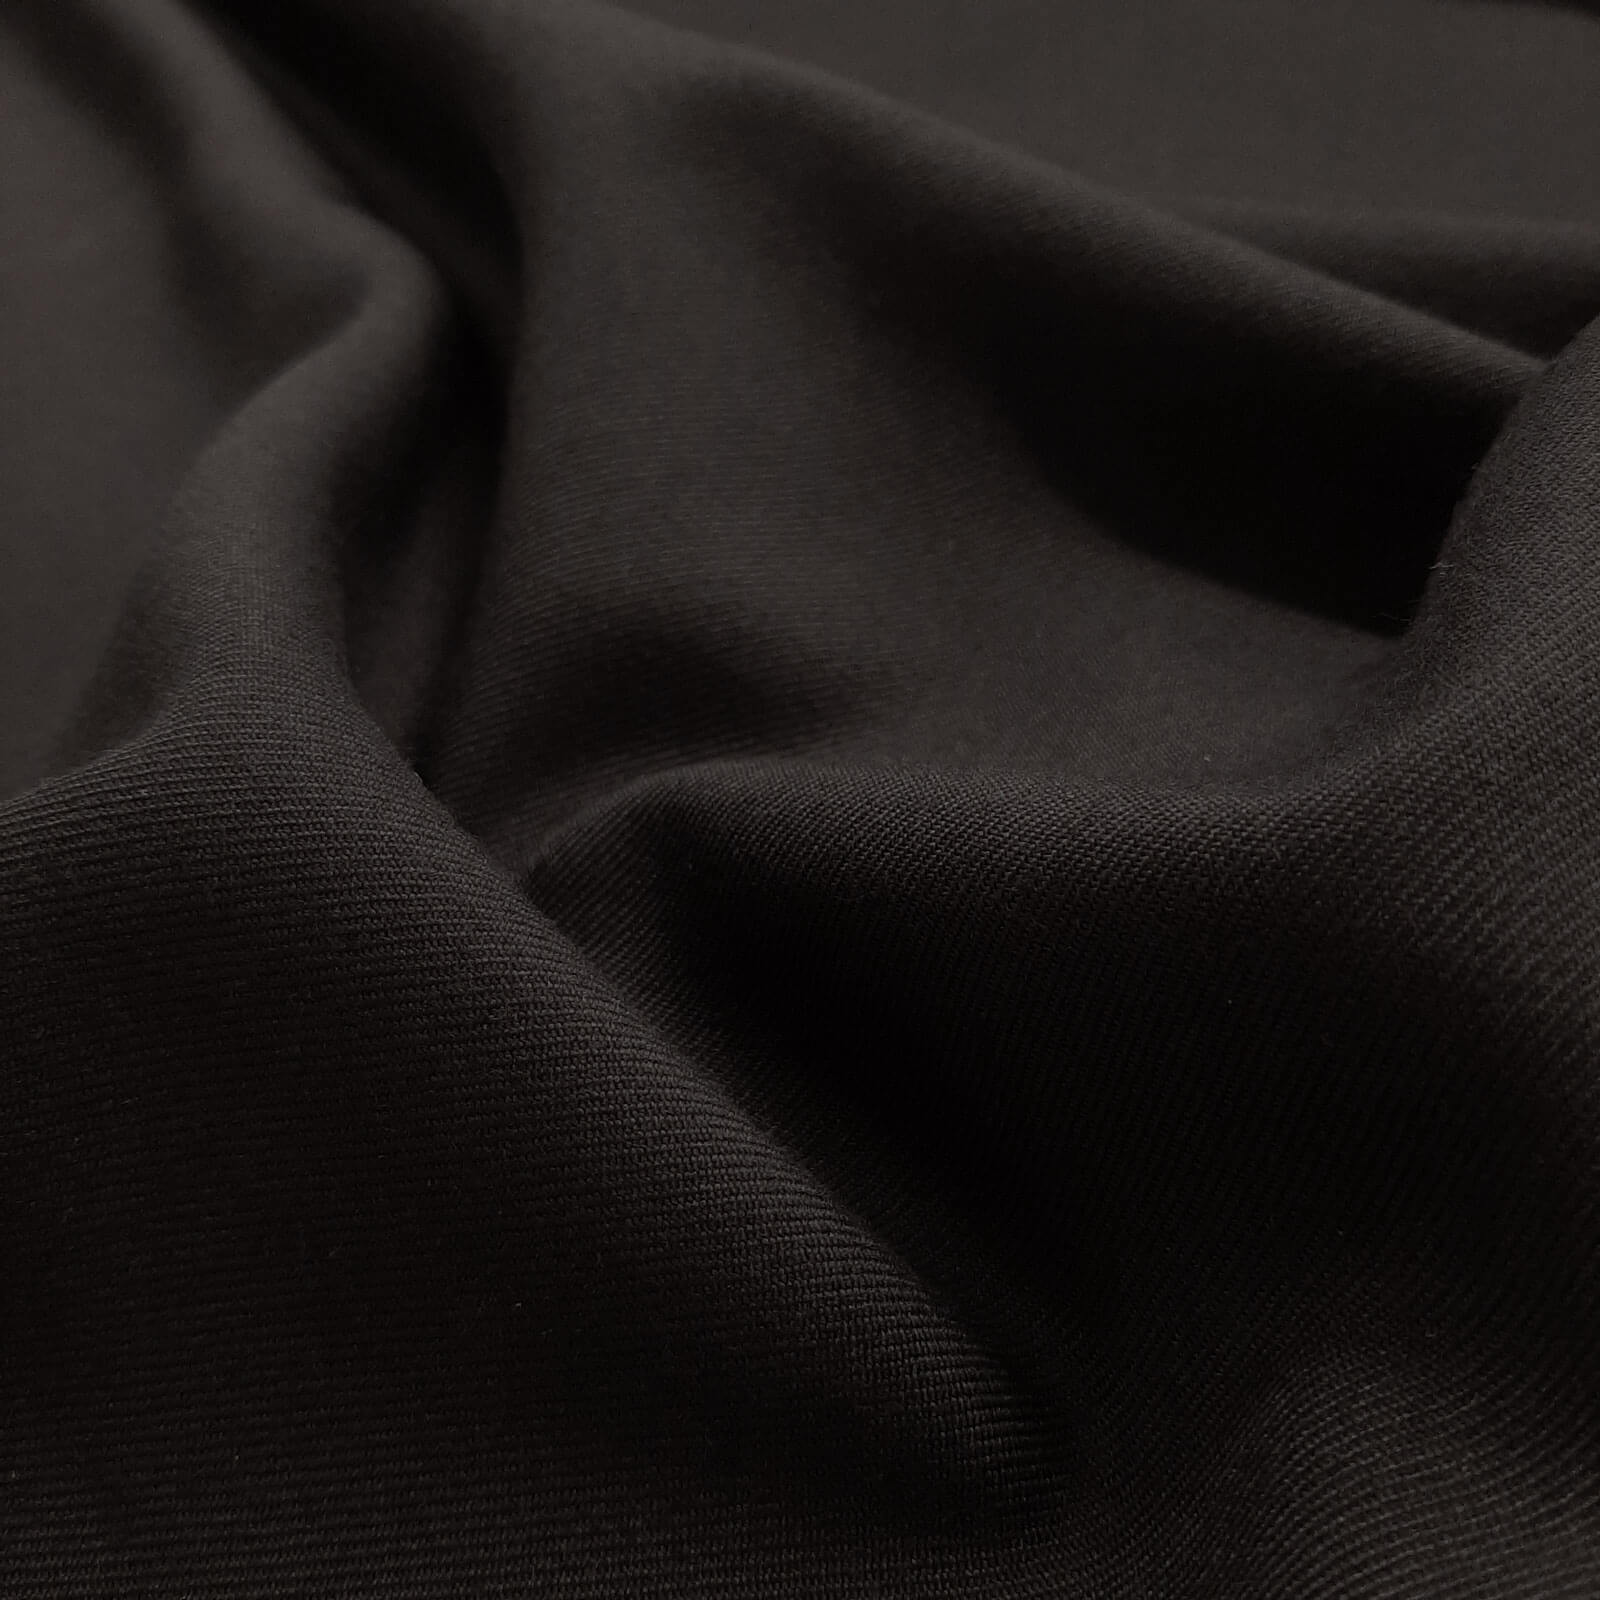 Franziskus - Woolen cloth / Uniform cloth - Black 